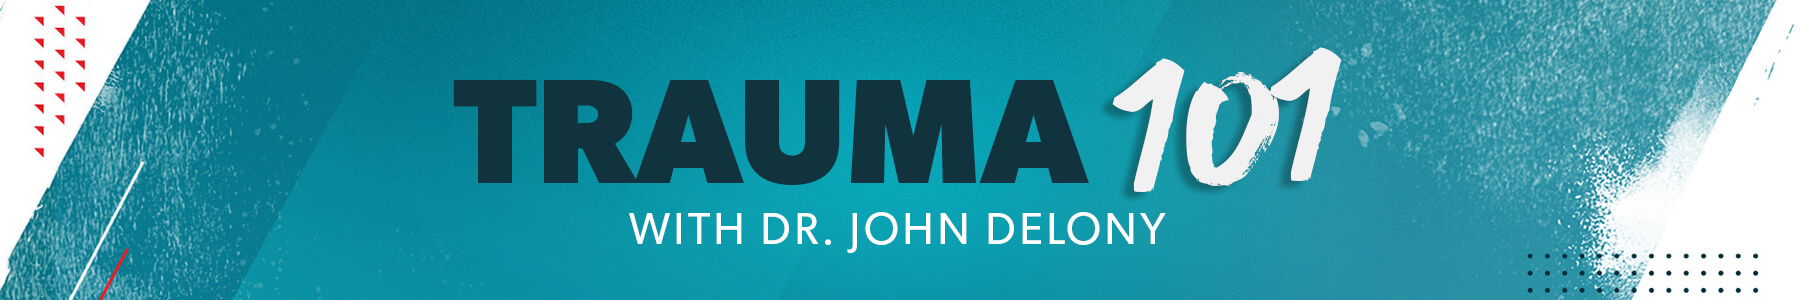 Trauma 101 with Dr. John Delony